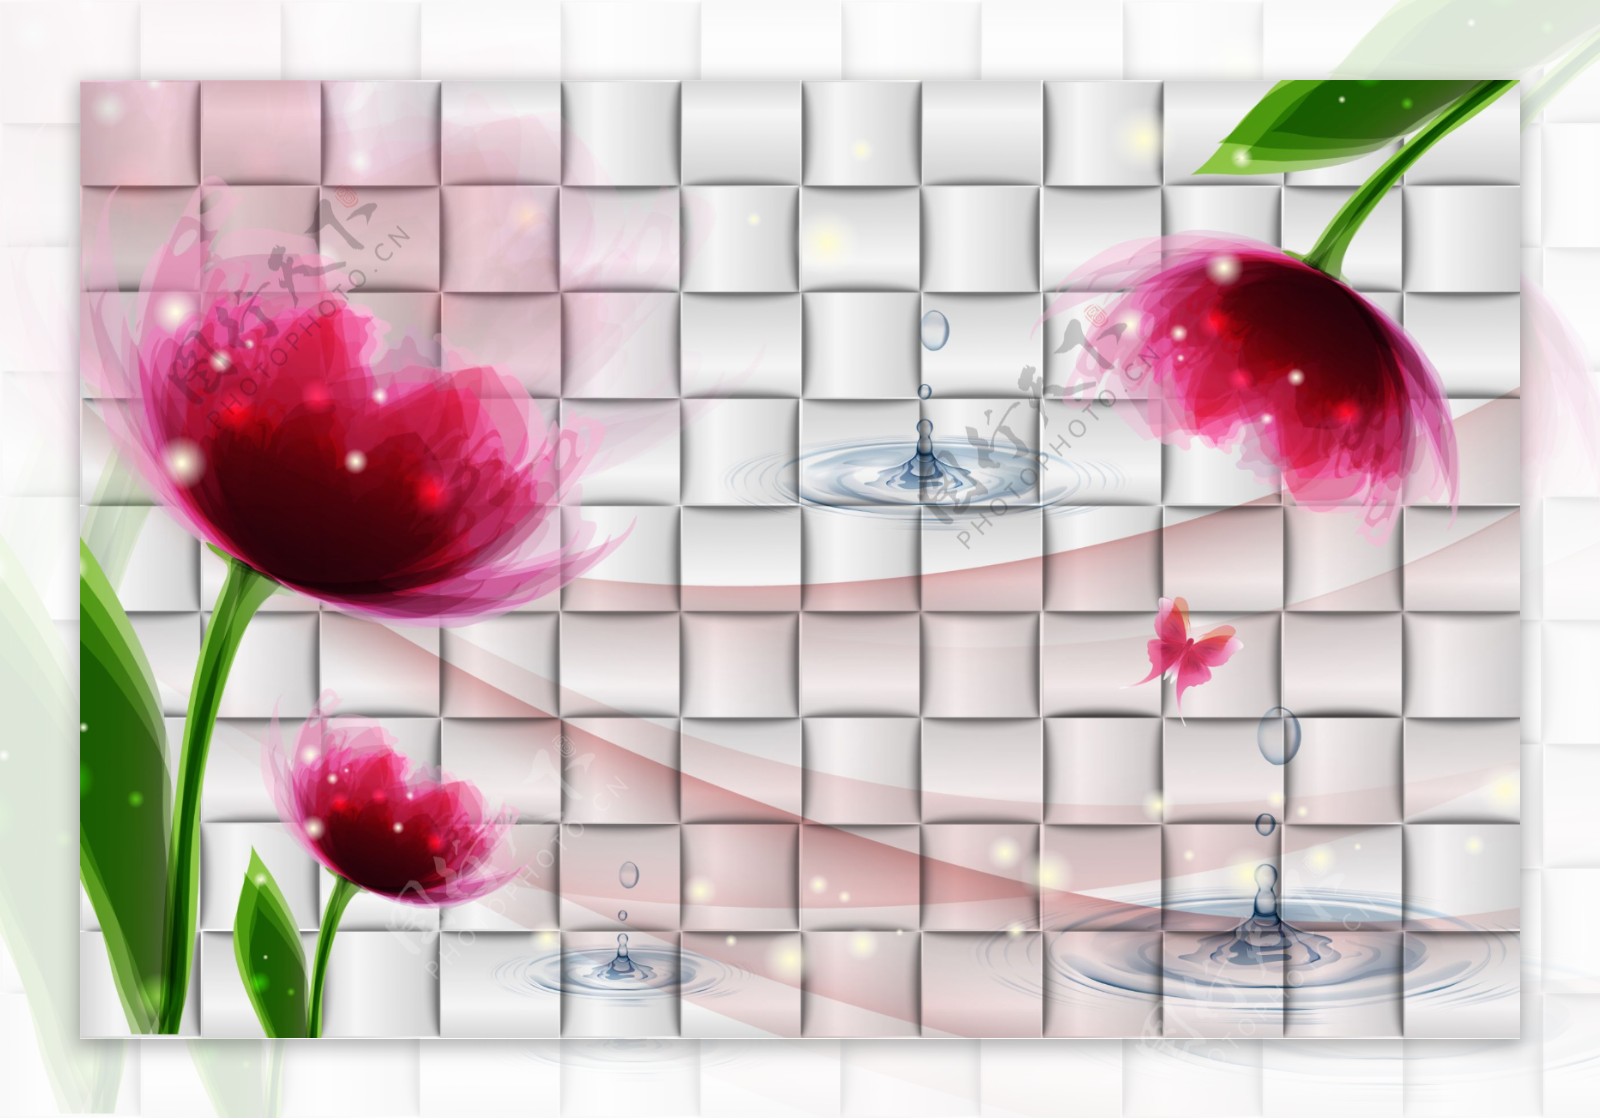 方块装饰花卉背景墙